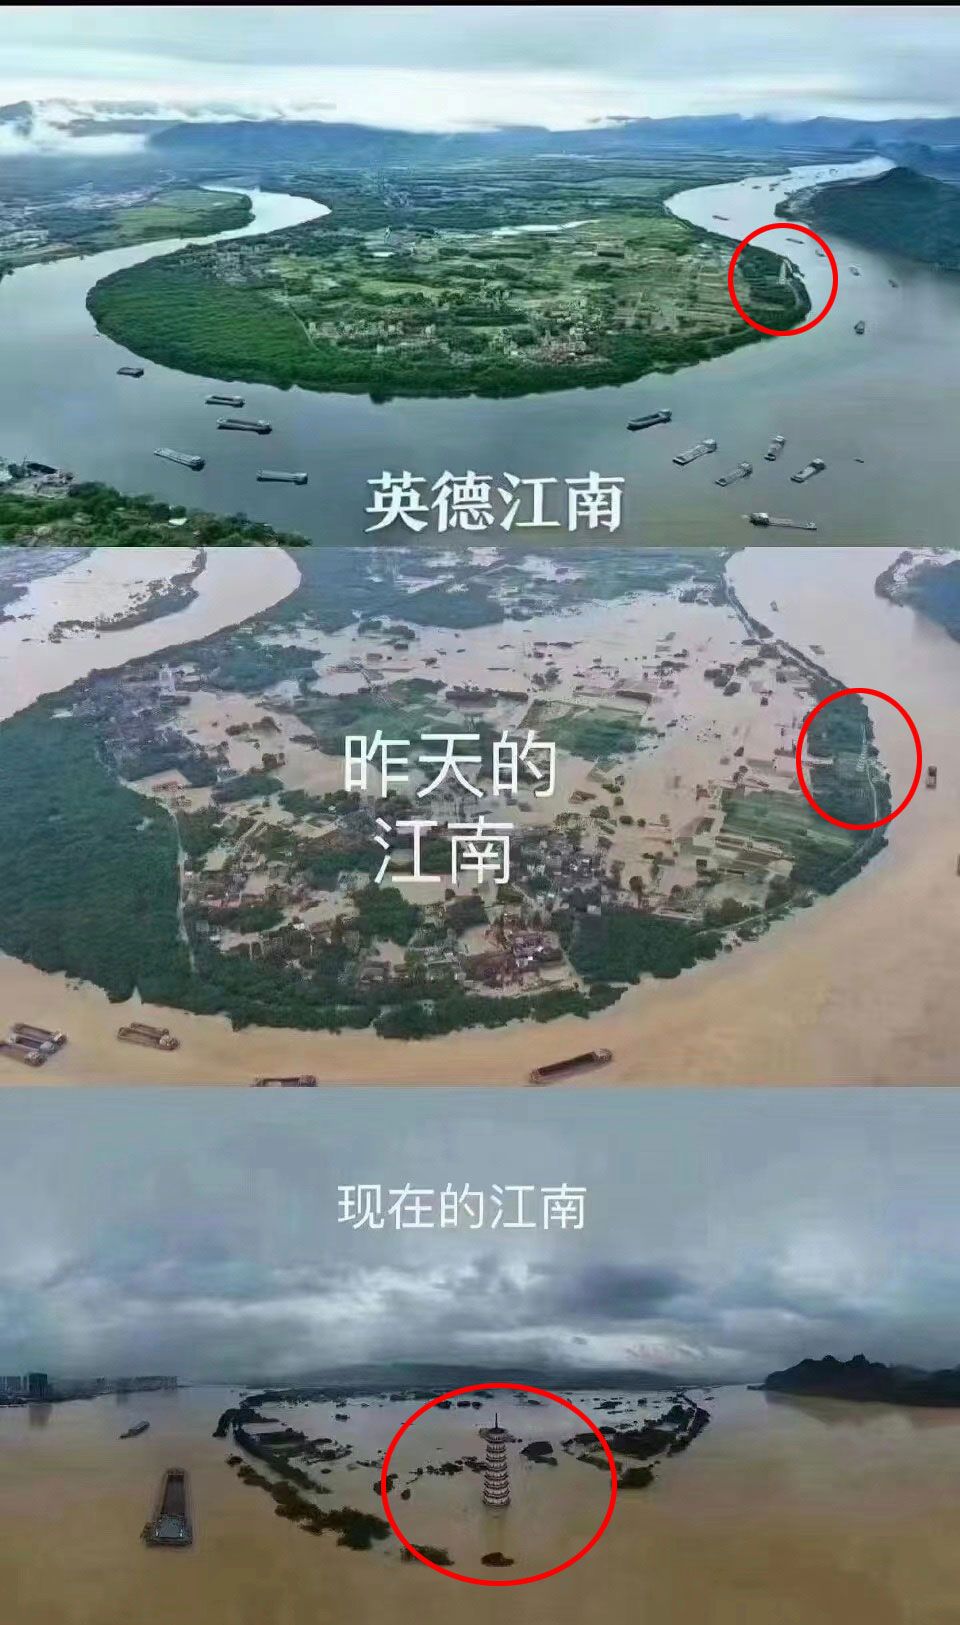 广东英德特大洪水已超过历史实测最高水位 多名居民发微博求助